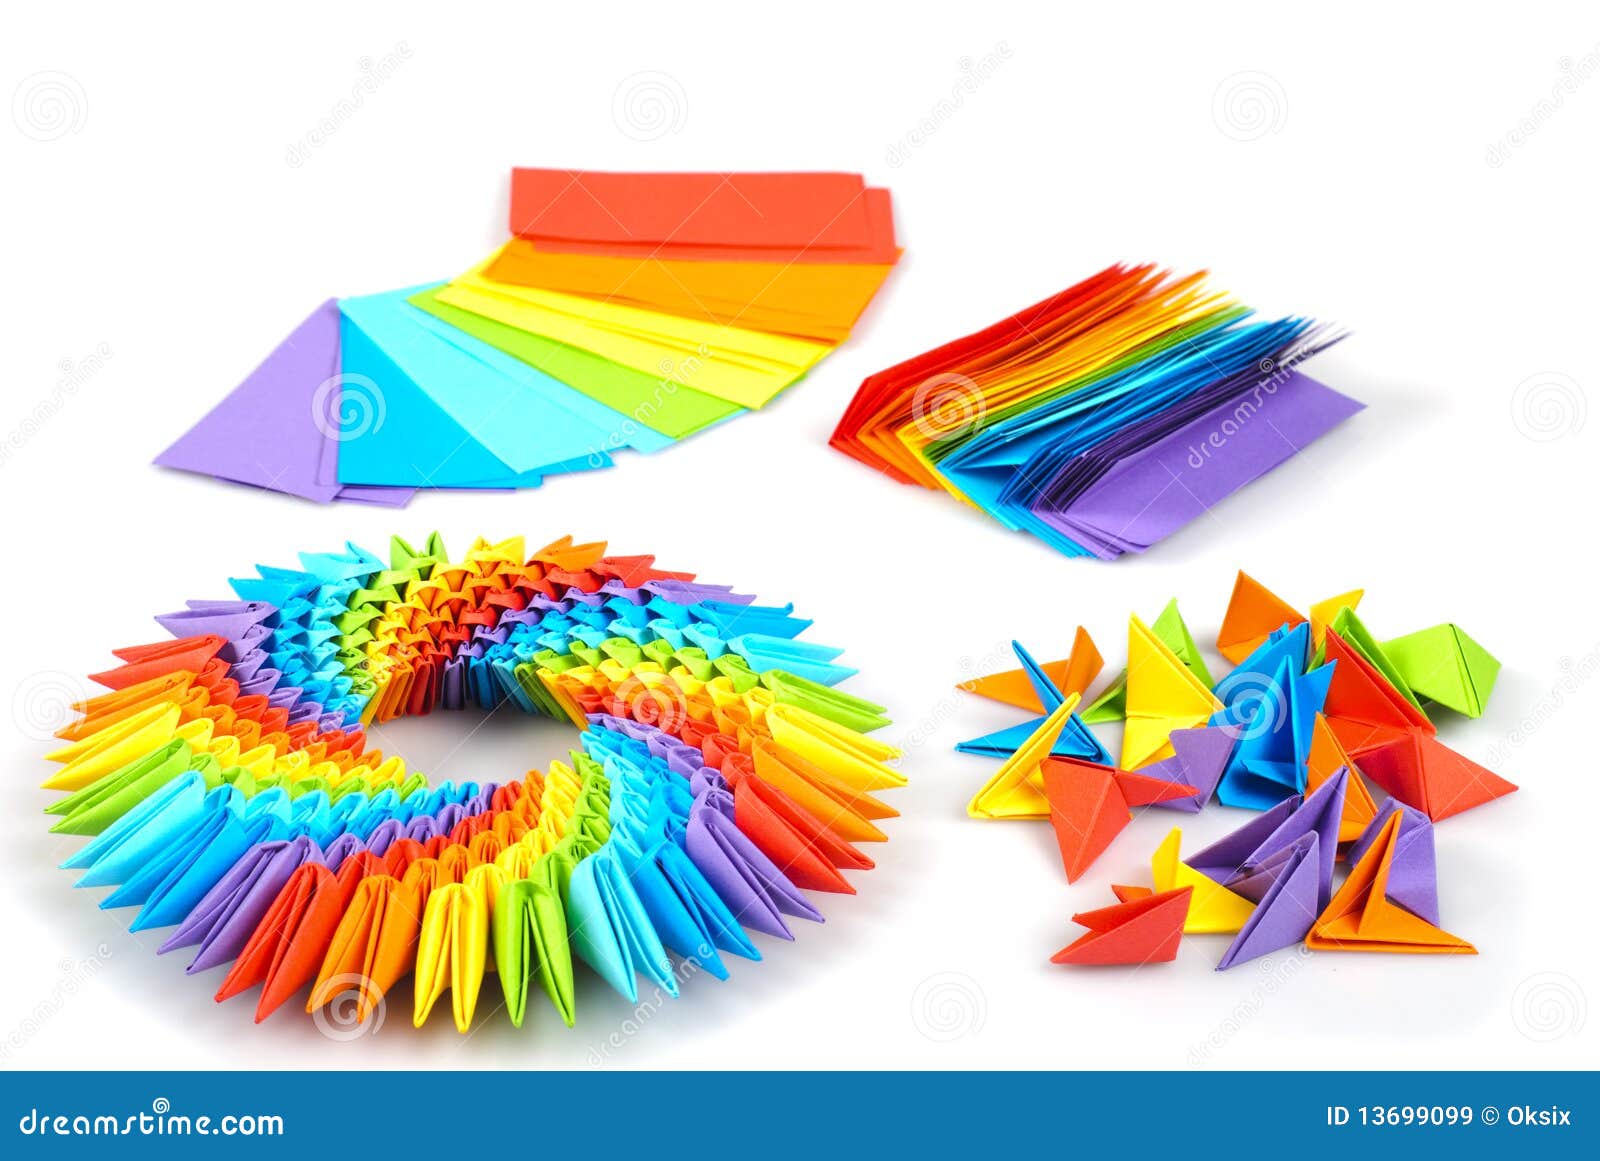 Maßeinheiten getrennt origami  Colorfull  regenbogen wie ein 3d Regenbogenkreis  origami kusudama